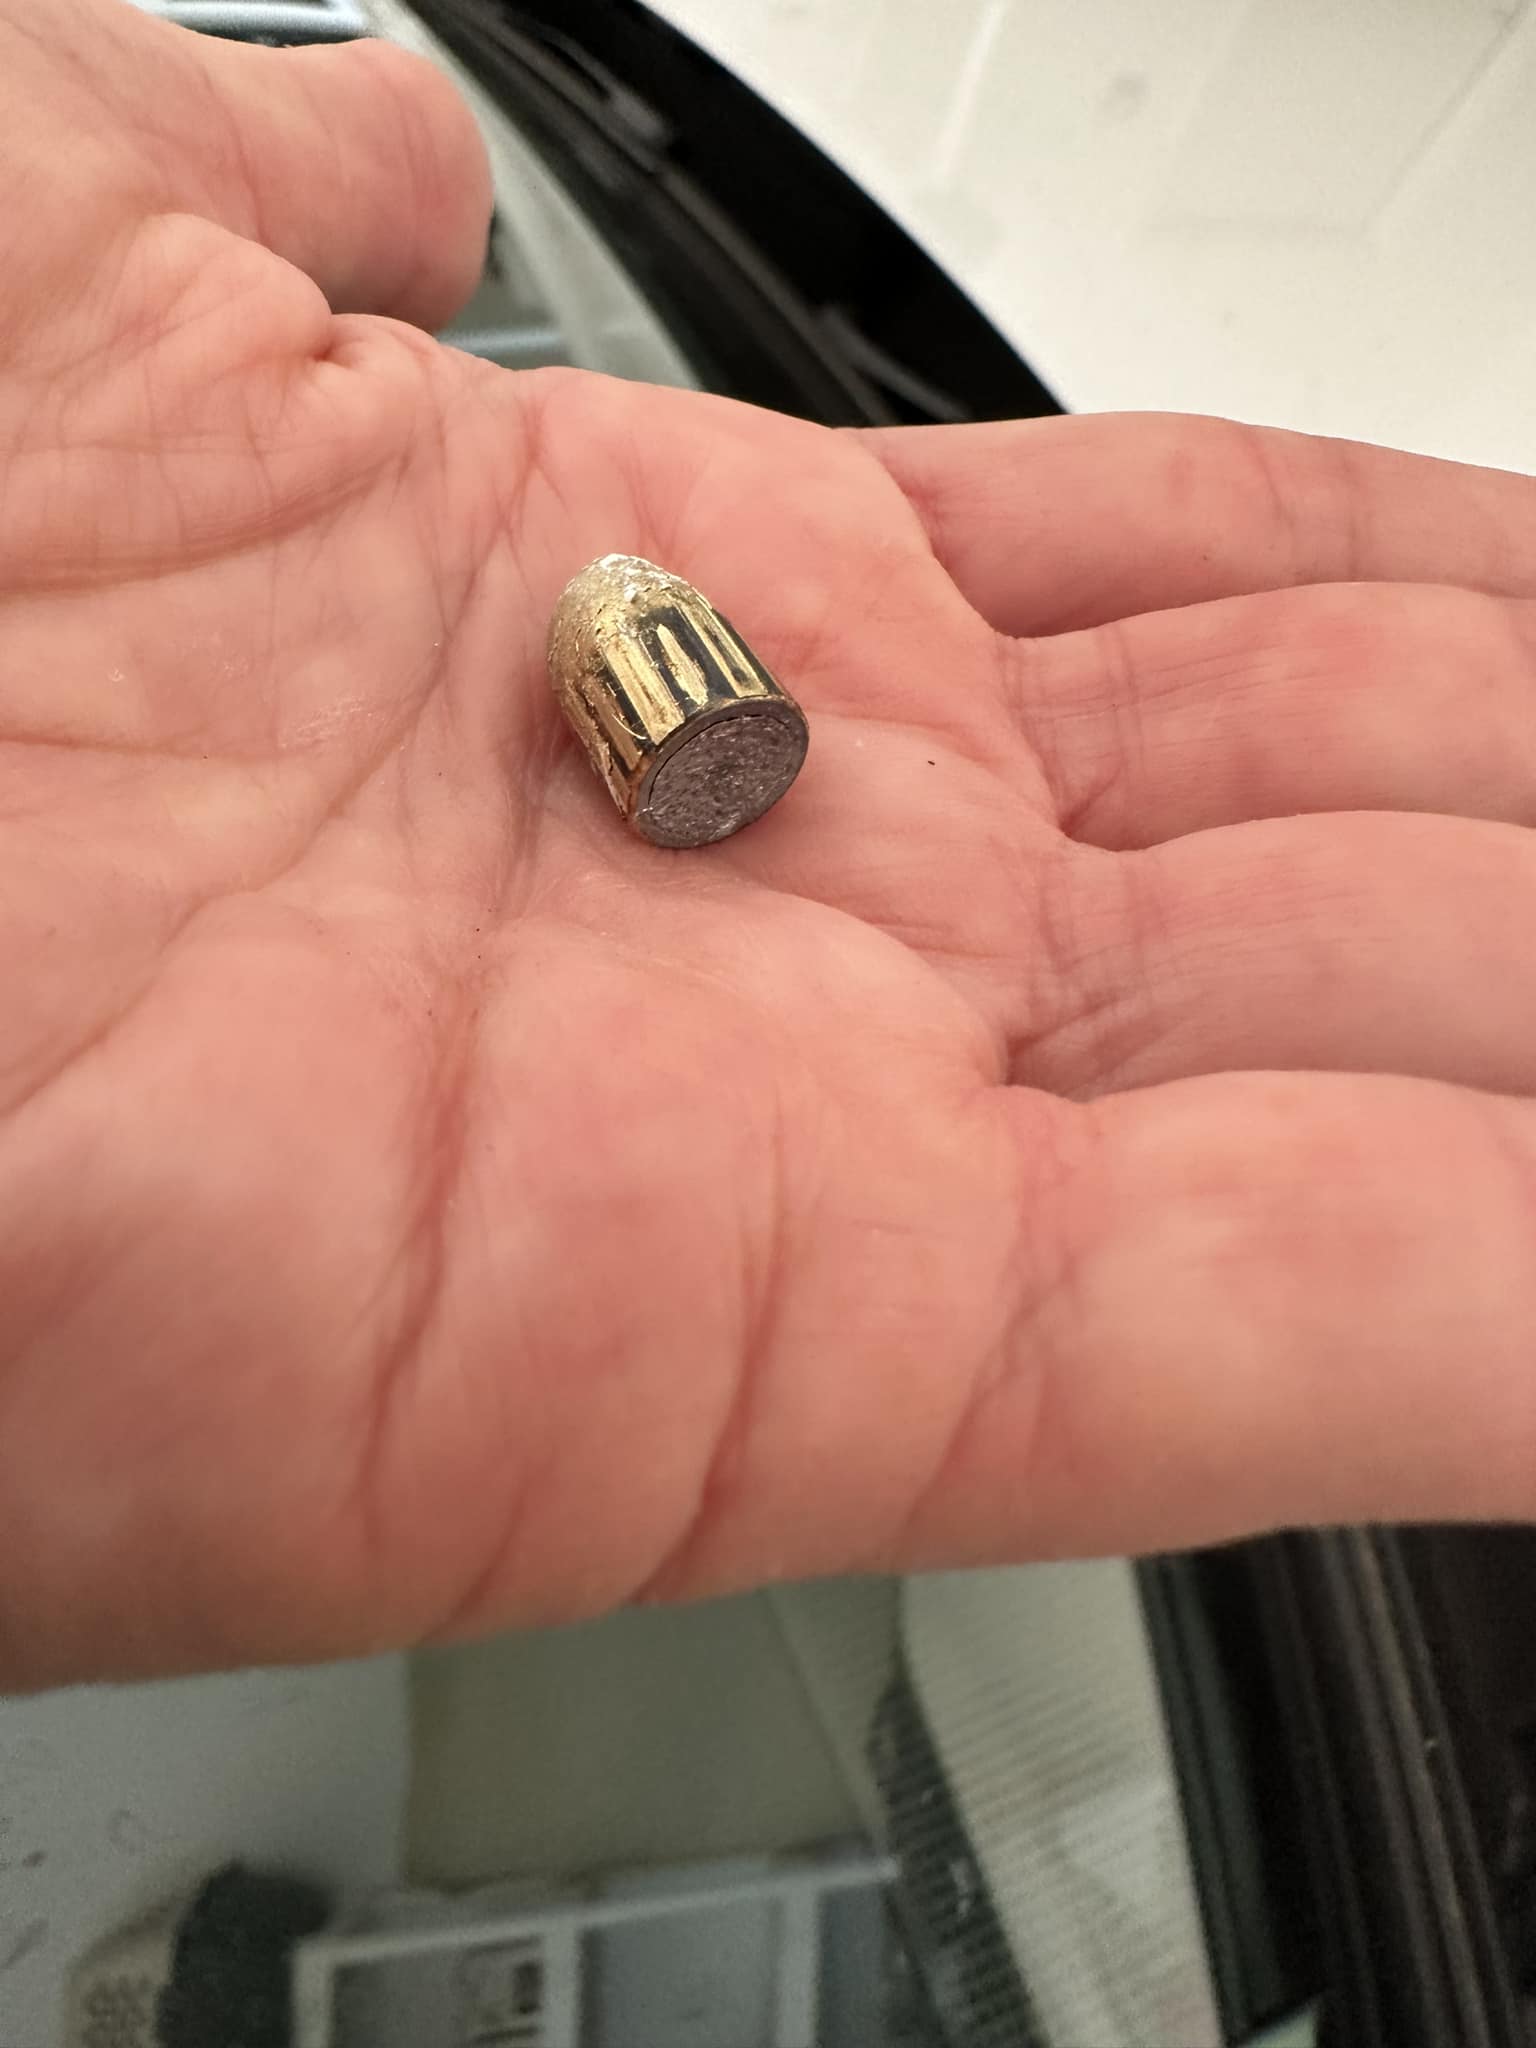 Image of bullet courtesy of Beth Elder